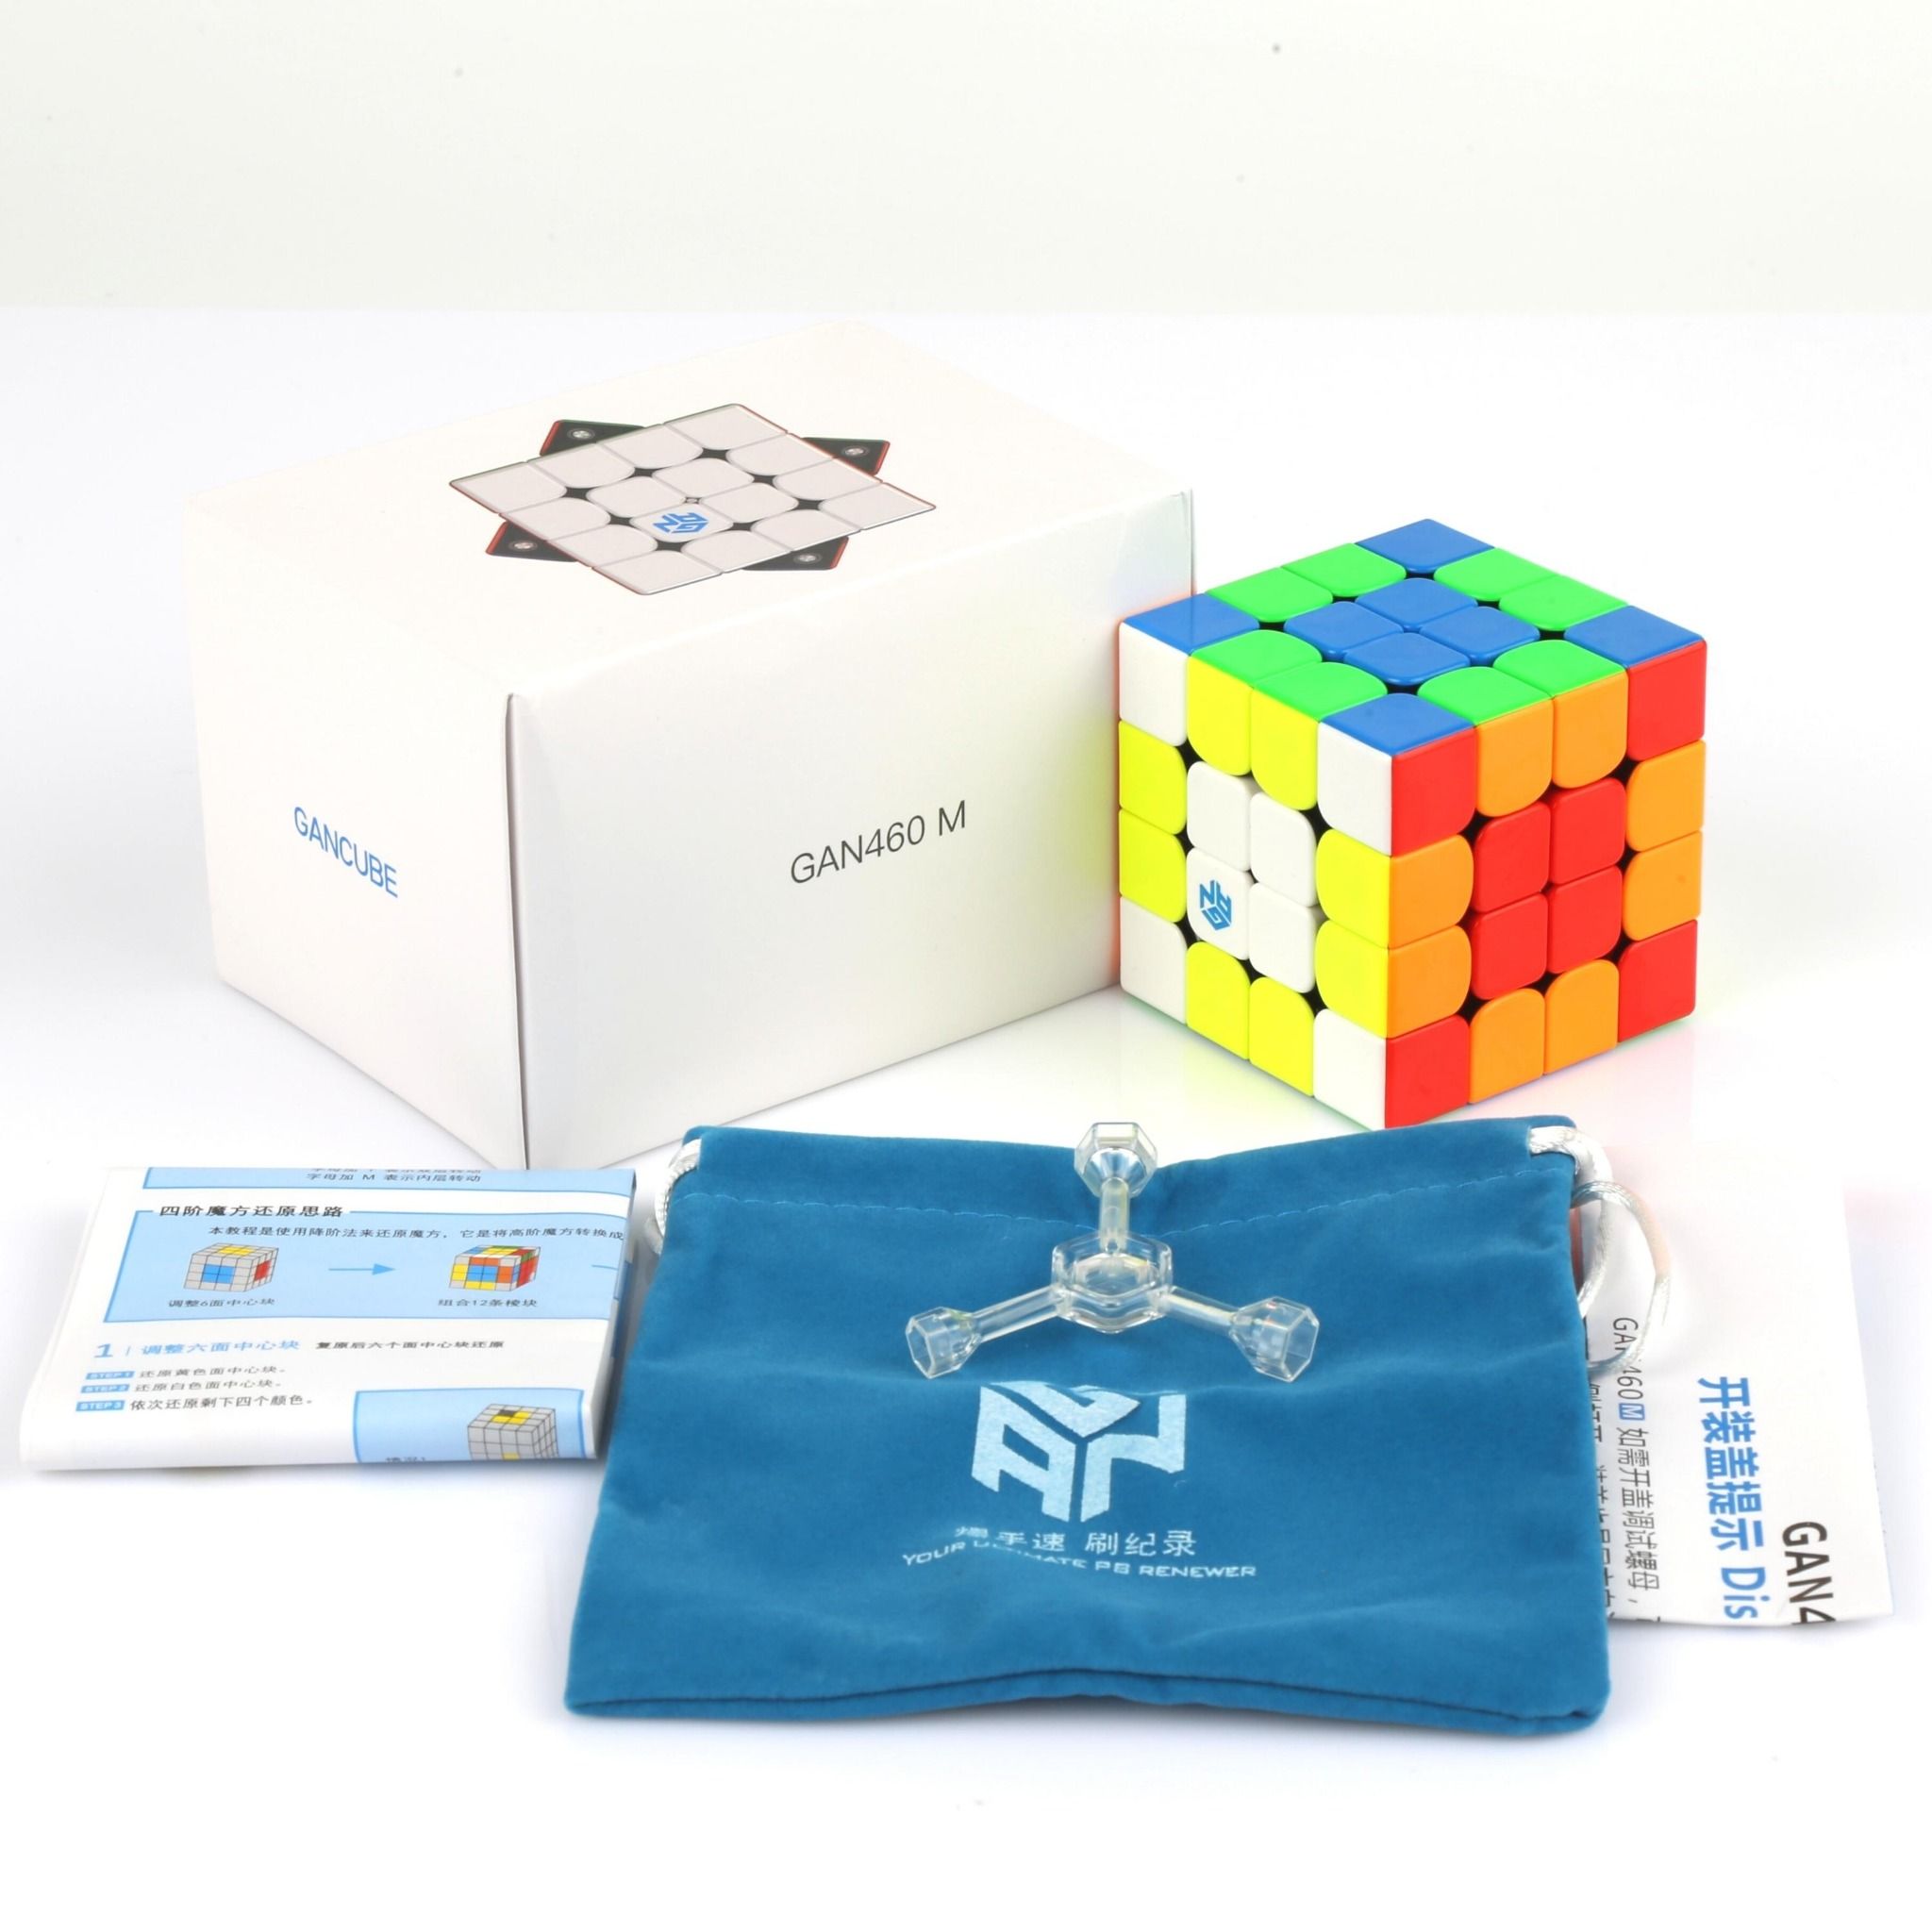  Rubik Gan 460 M - Đồ Chơi Tri Tuệ Khối Lập Phương 4 Tầng Nam Châm Dòng Cao Cấp Flagship - ZyO Rubik 